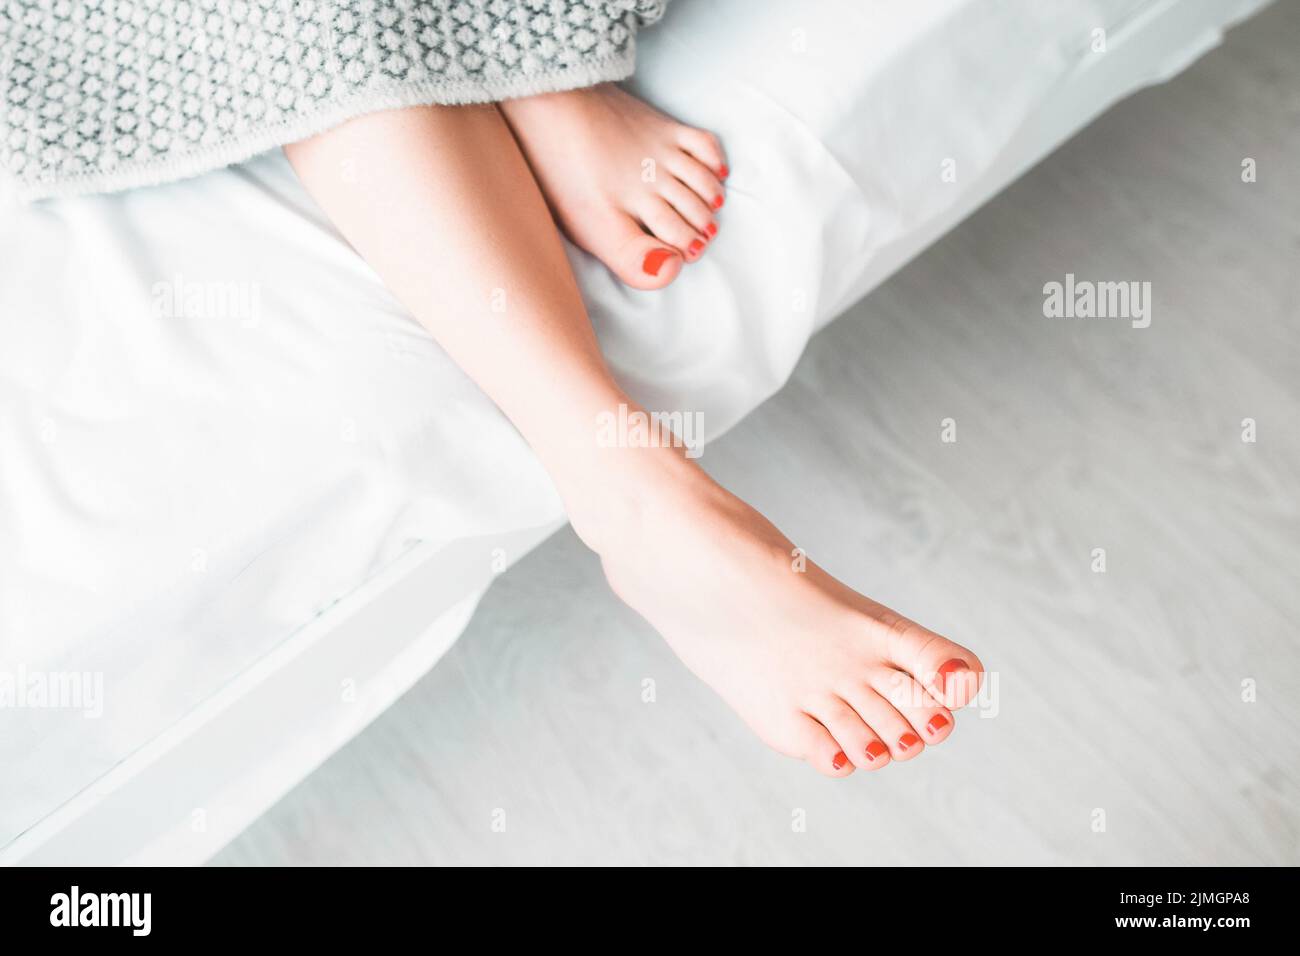 soins du corps bien-être pieds nus femme jambes lit Banque D'Images